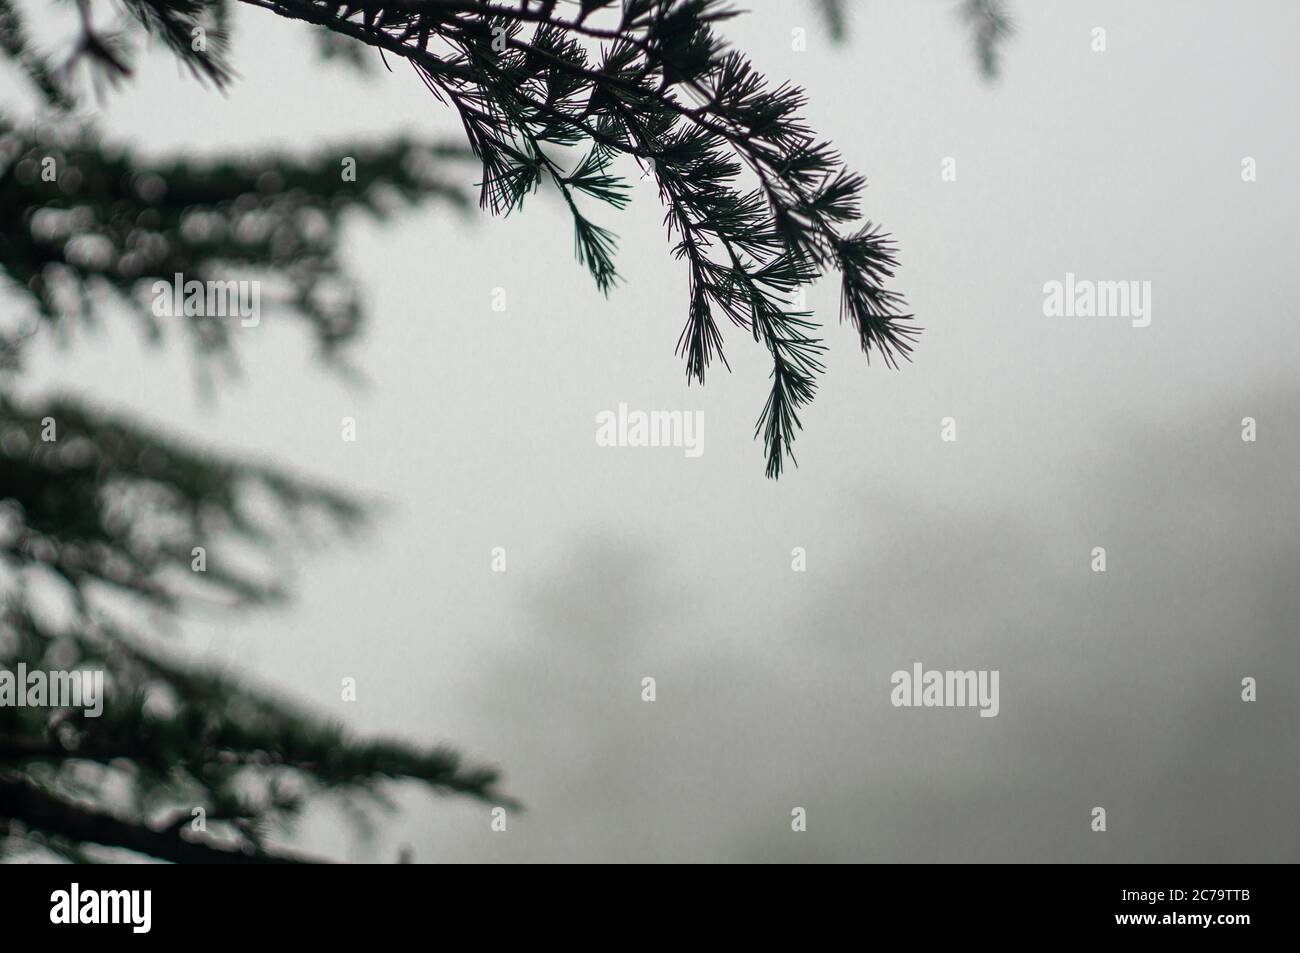 Nebliger Wintershoot zeigt sommergrüne tannenbäume mit spitzen Blättern, die im Nebel langsam in die Ferne verblassen Stockfoto